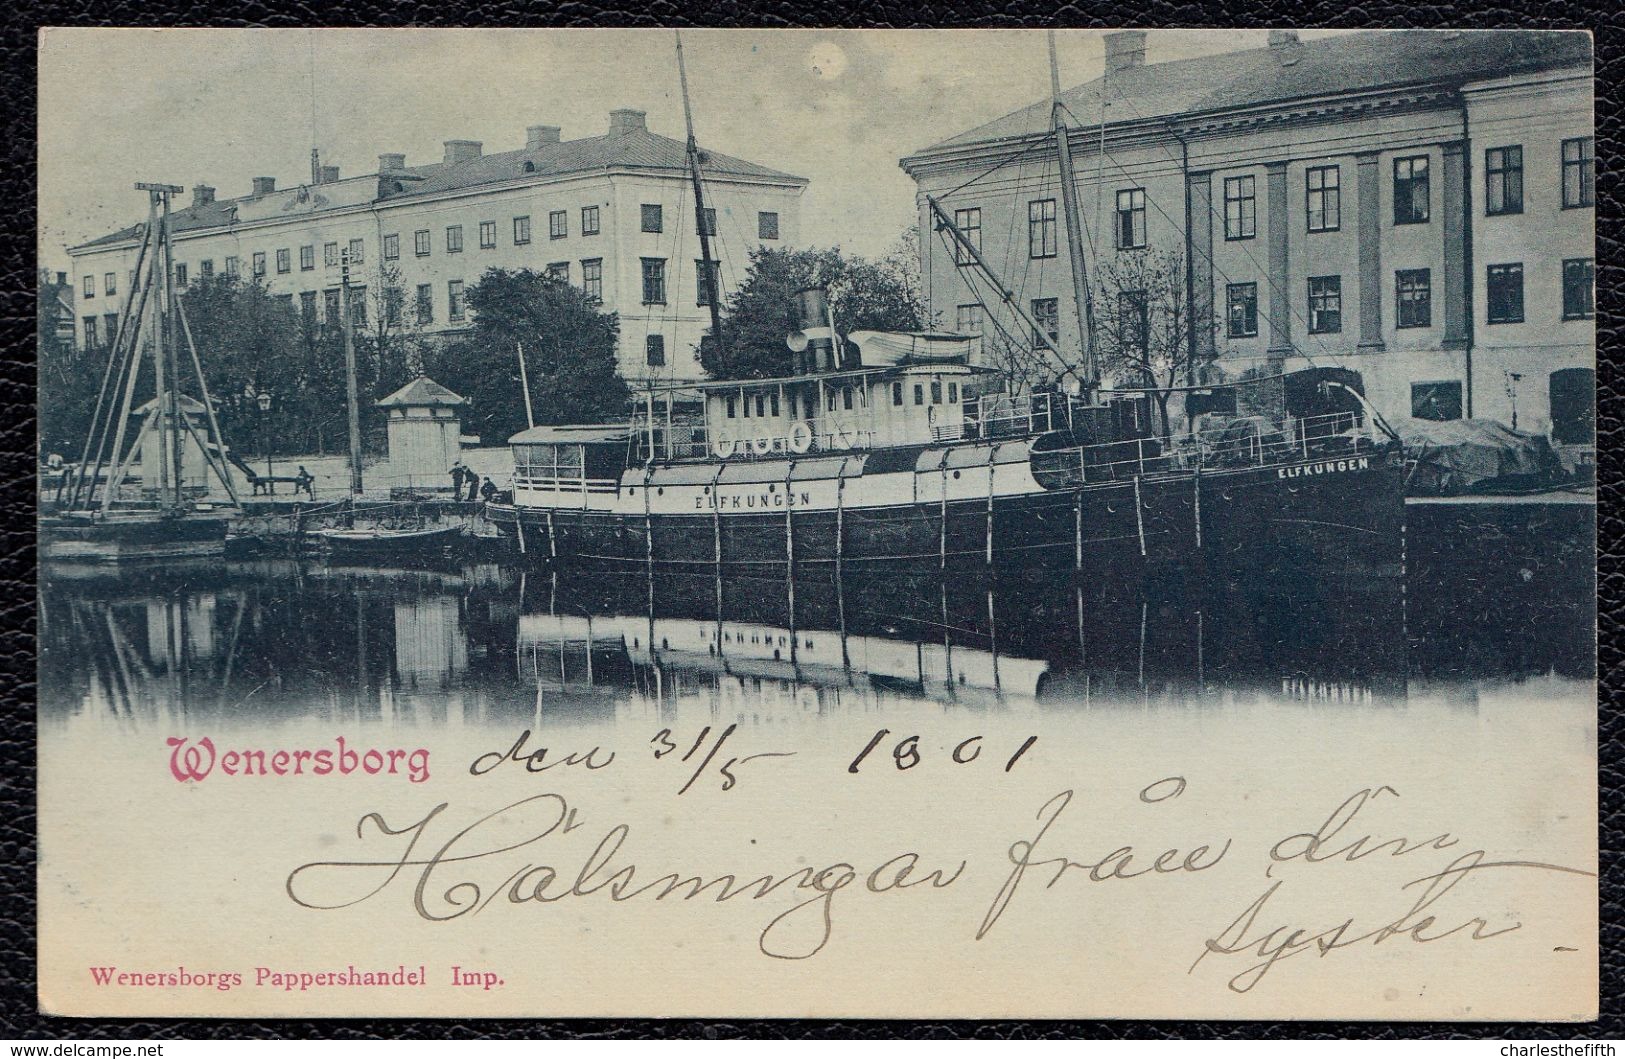 VÄNERSBORG - WENERSBORG --- GREAT VIEW FROM 1901 - RARE - SHIP ** ELFKUNGEN ** - Suède